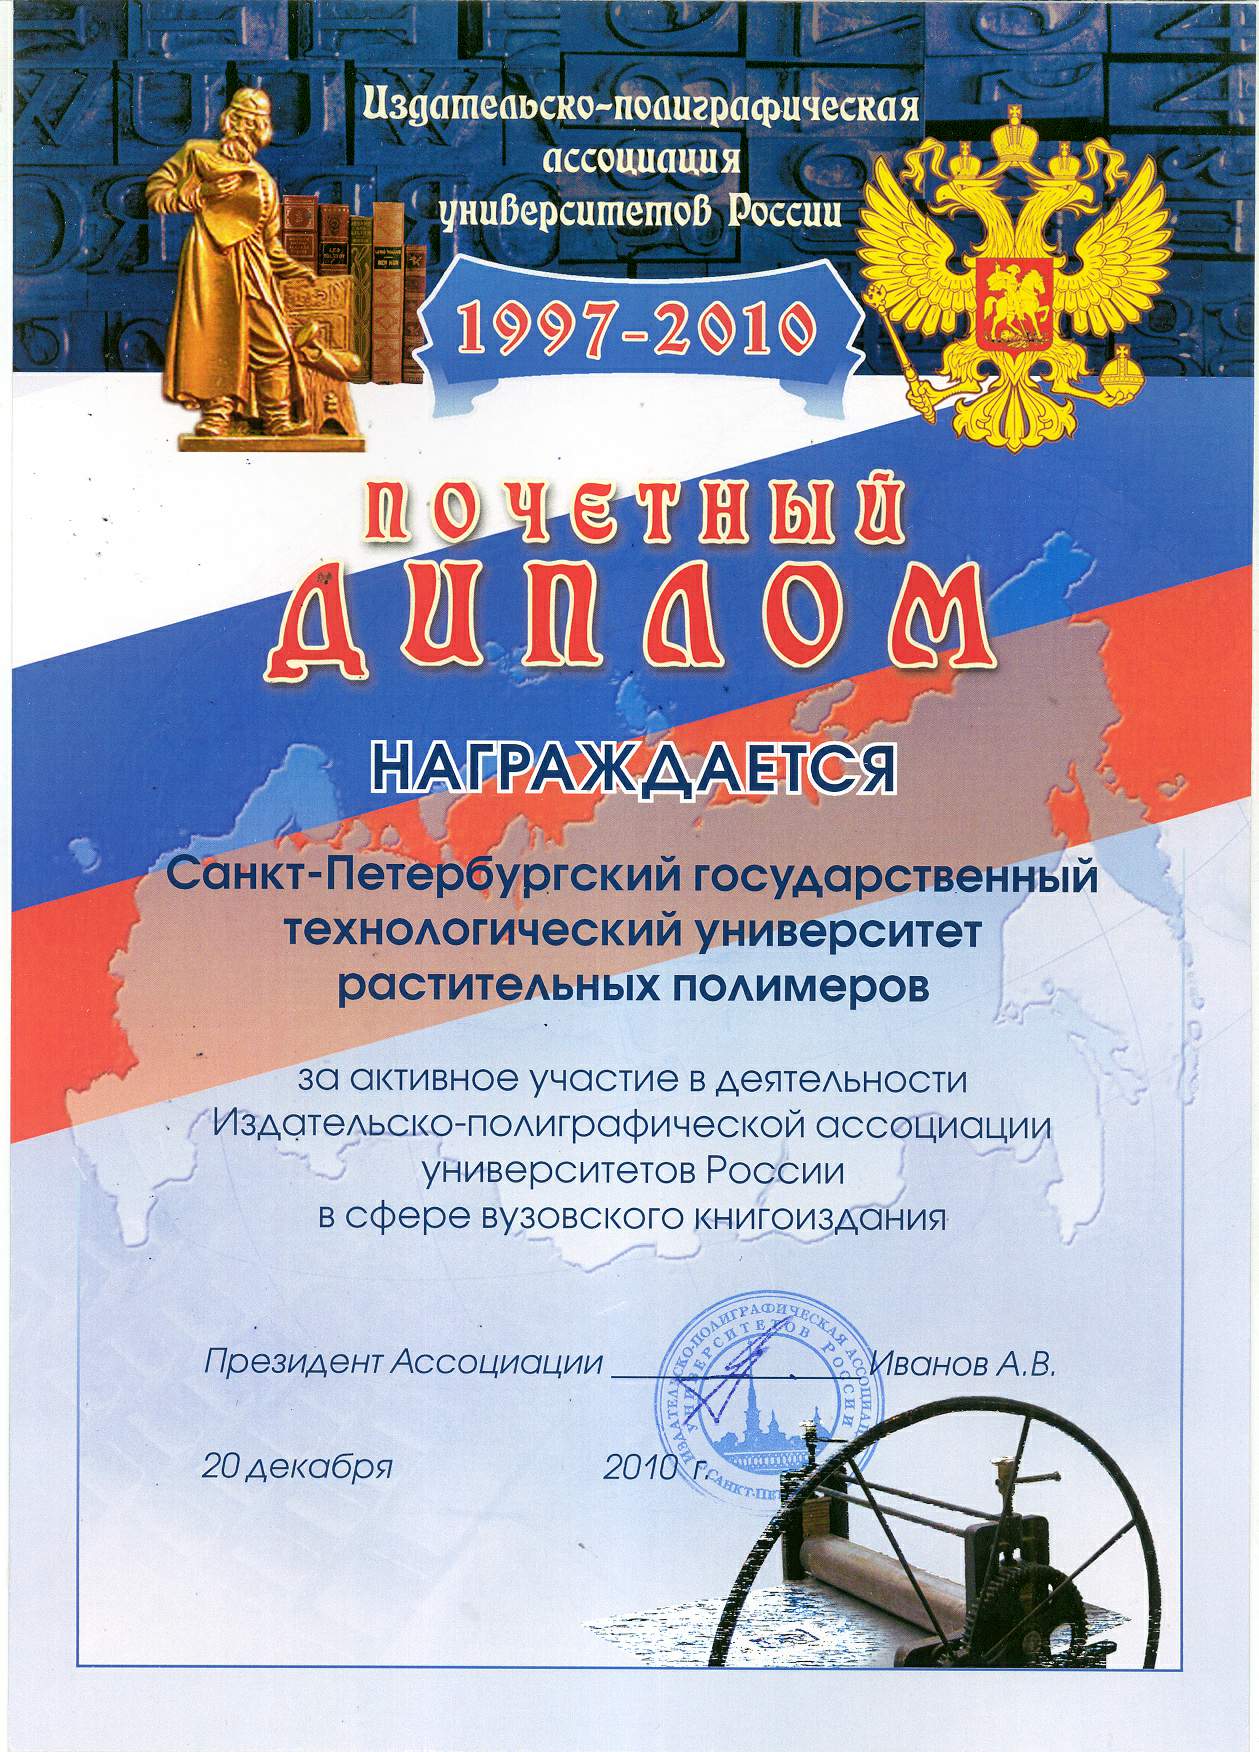 Почетный диплом за активное участие в деятельности Издательско-полиграфической ассоциации университетов России в сфере вузовского книгоиздания.